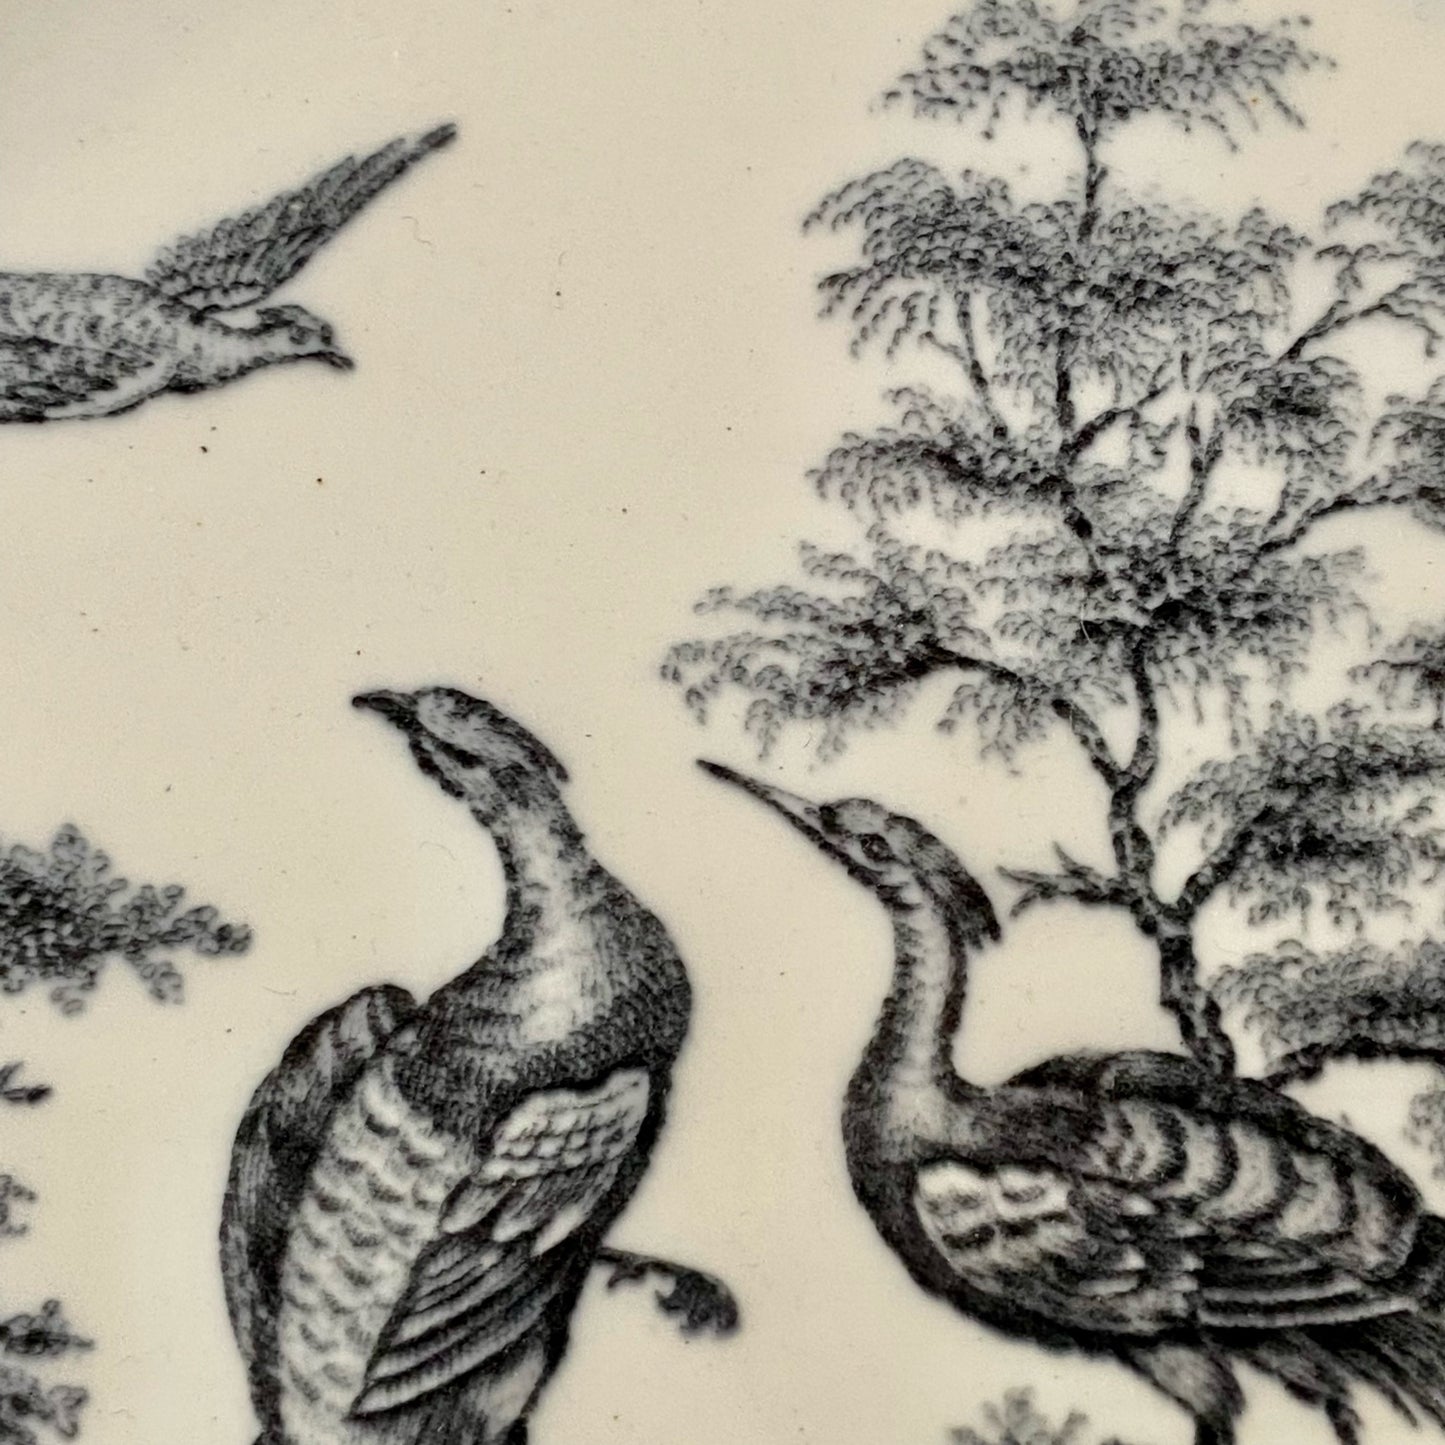 Vintage WEDGWOOD “Liverpool Birds” porcelain plate.